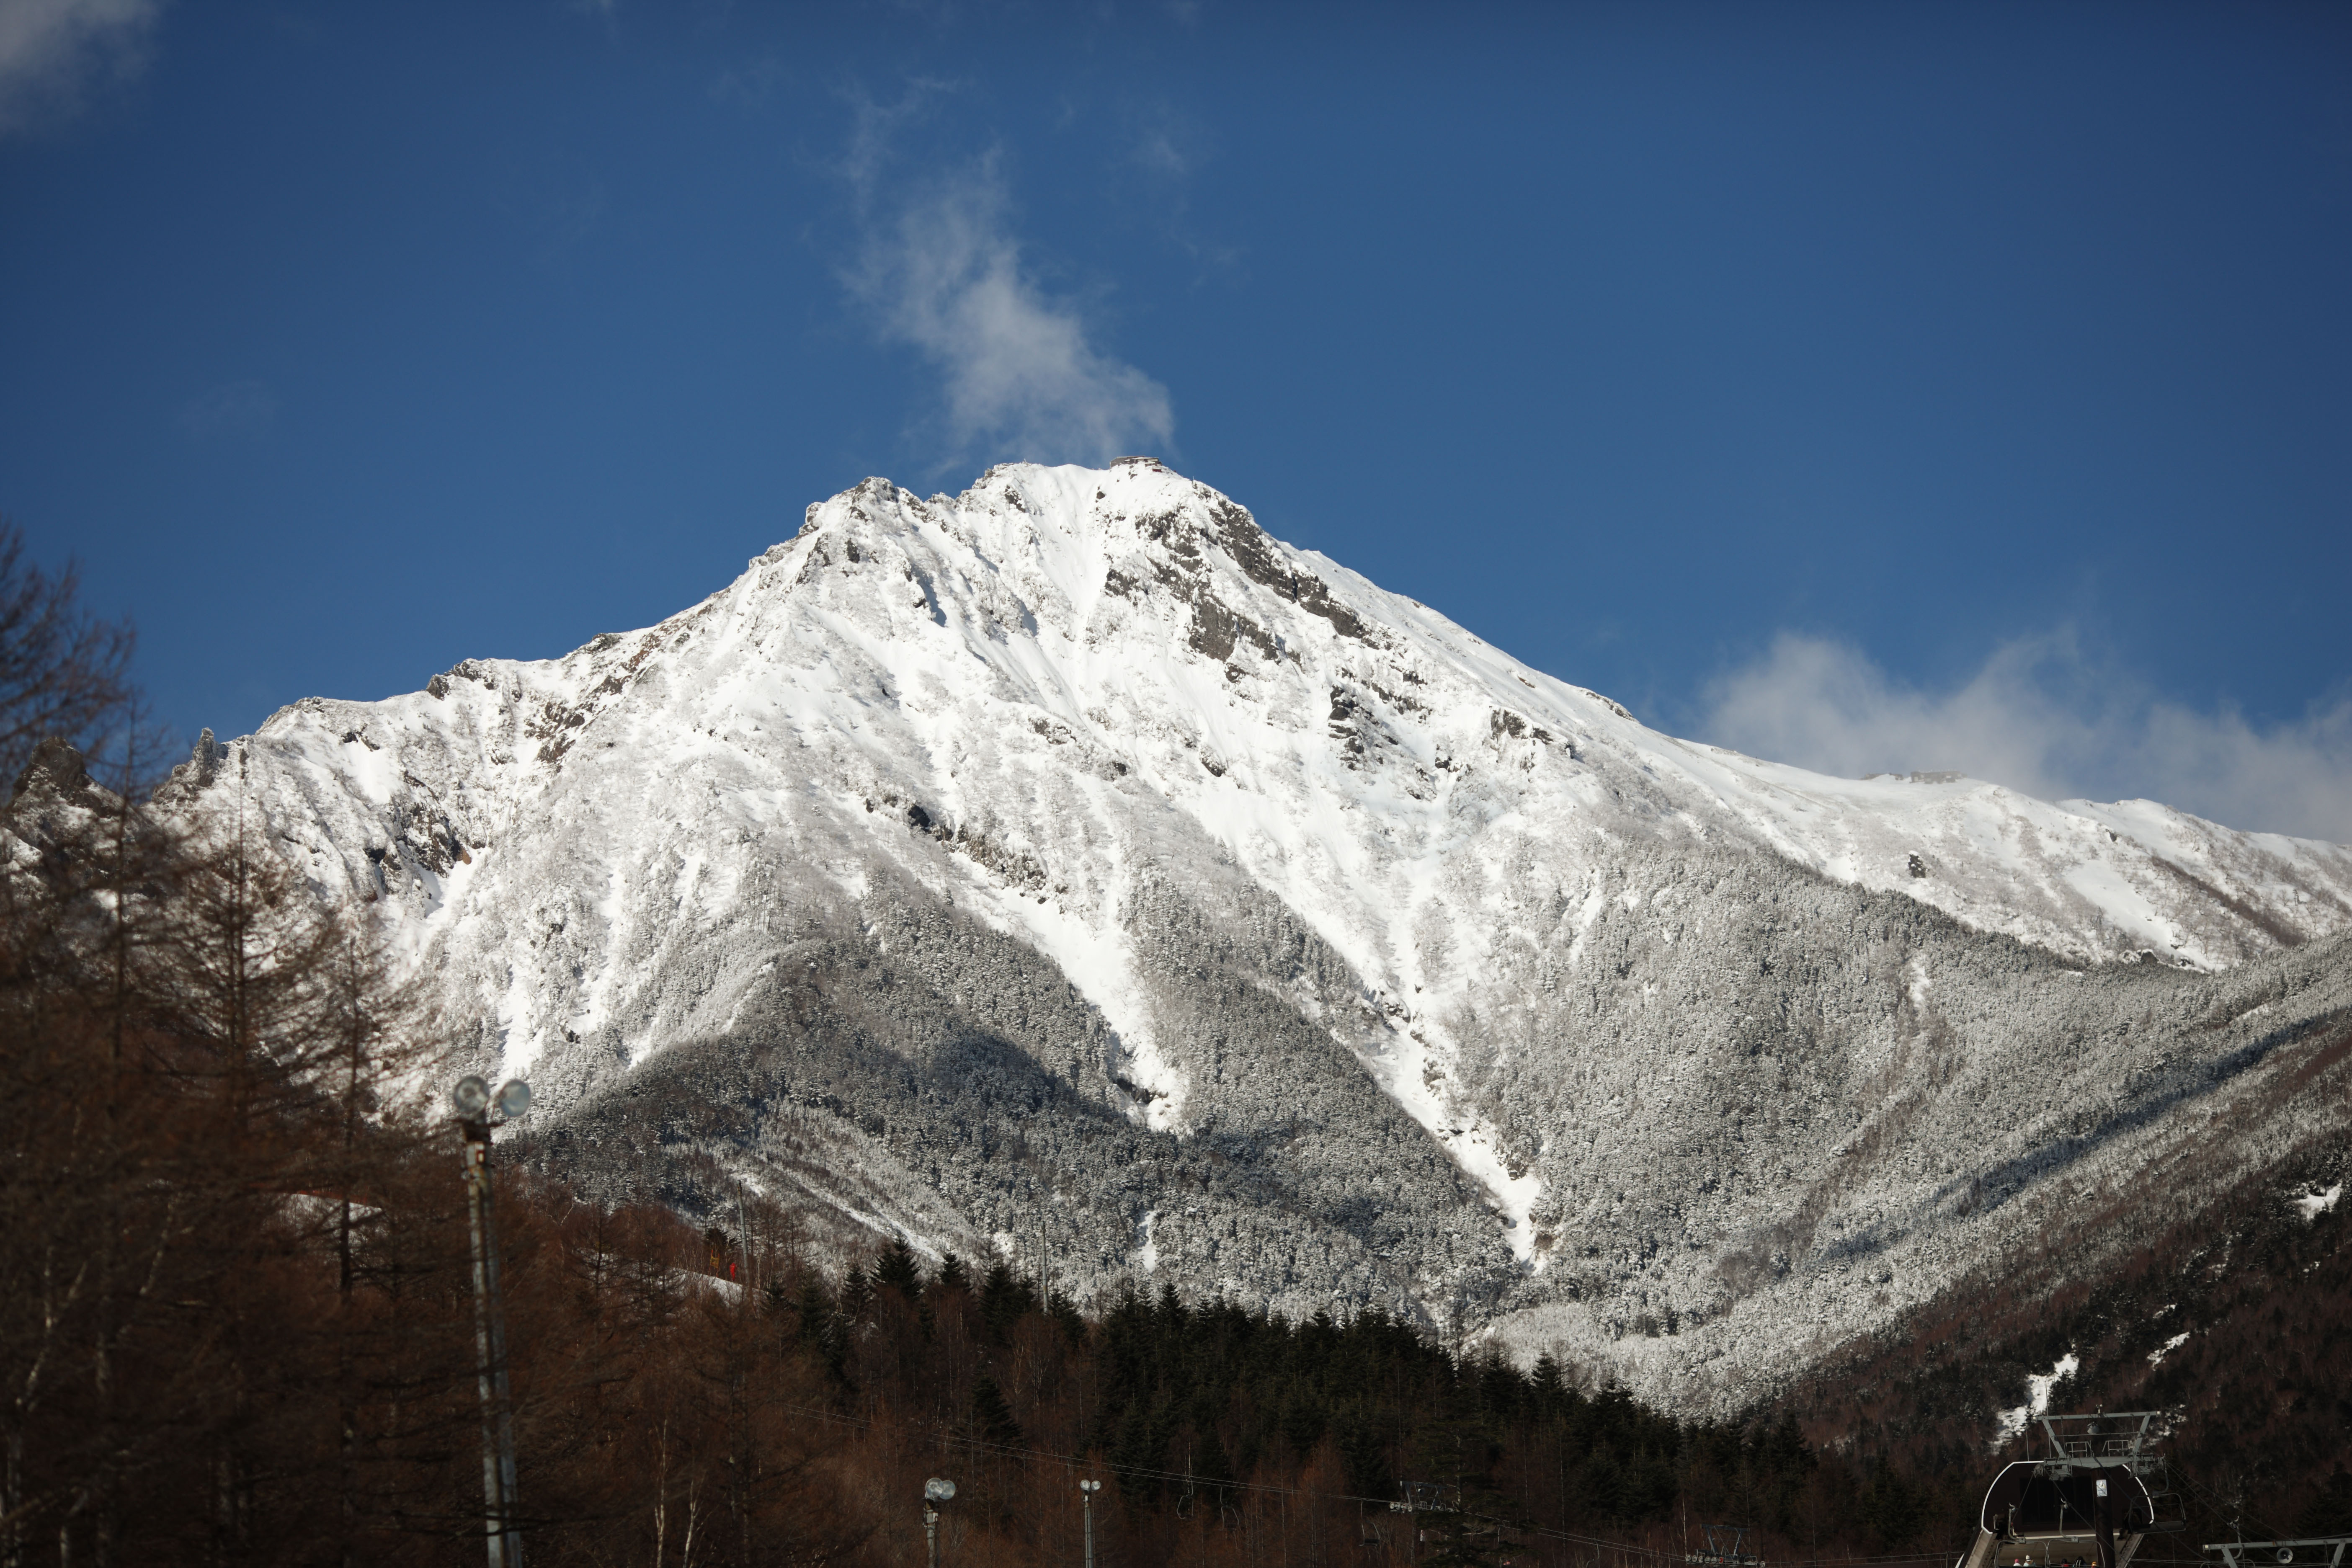 fotografia, materiale, libero il panorama, dipinga, fotografia di scorta,Mt rosso. Yatsugatake, Le Alpi, Montagna scalando, montagna di inverno, La neve